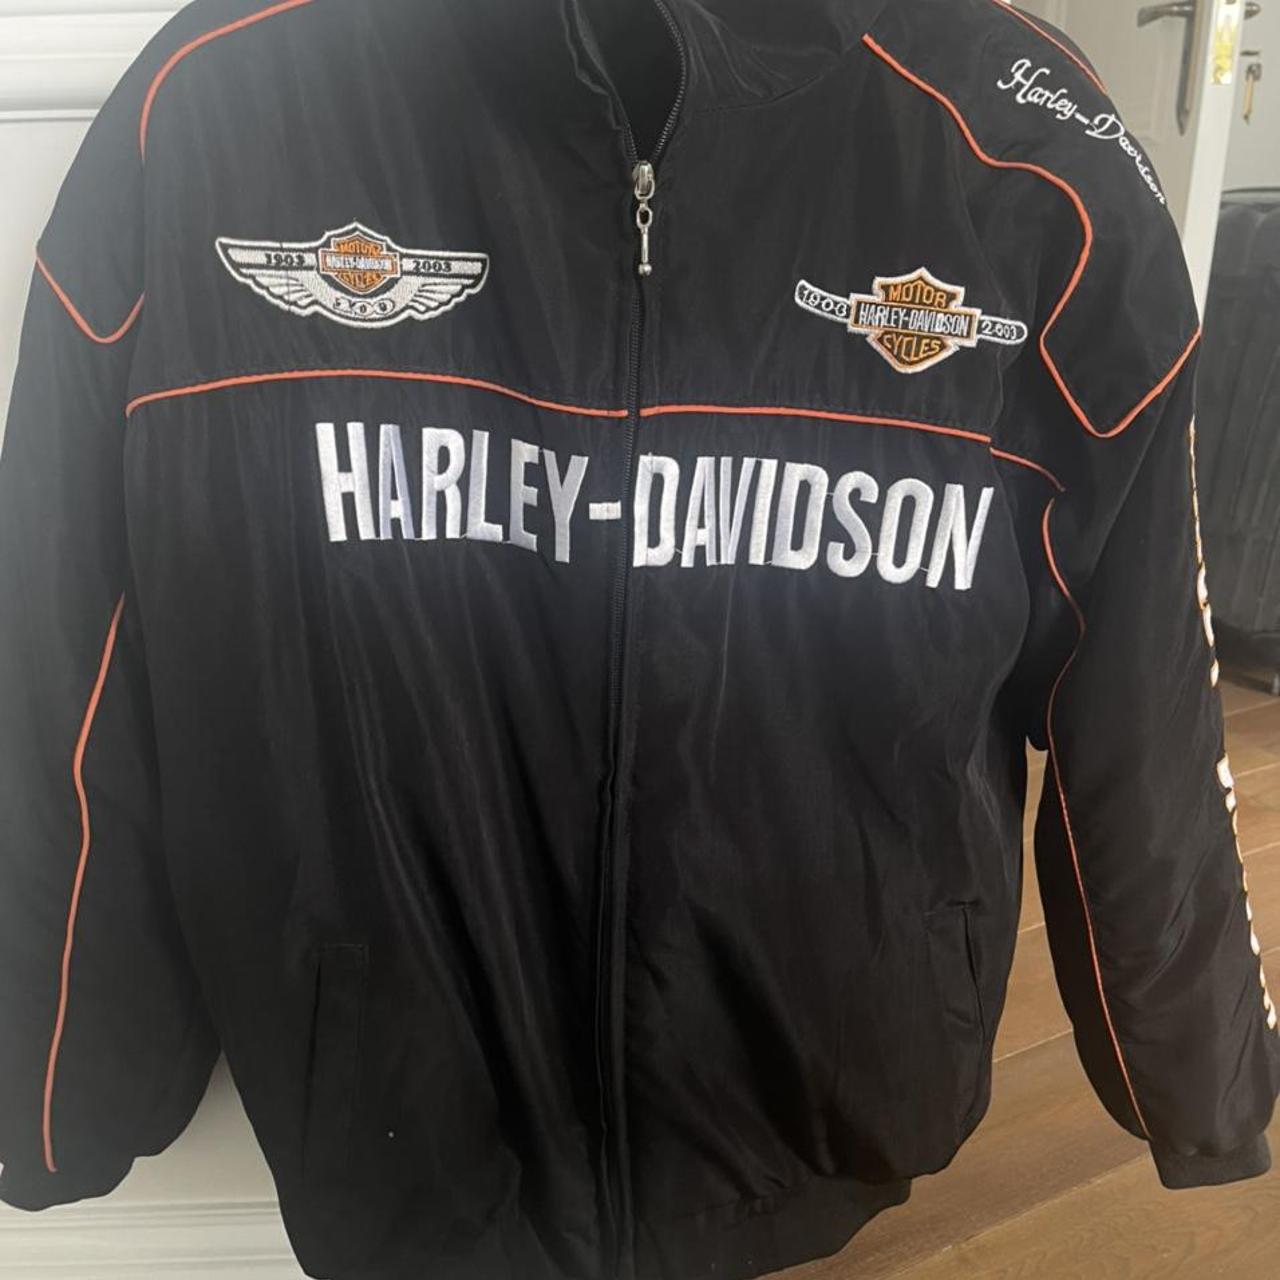 Harley Davidson racer bomber jacket in black. Love... - Depop